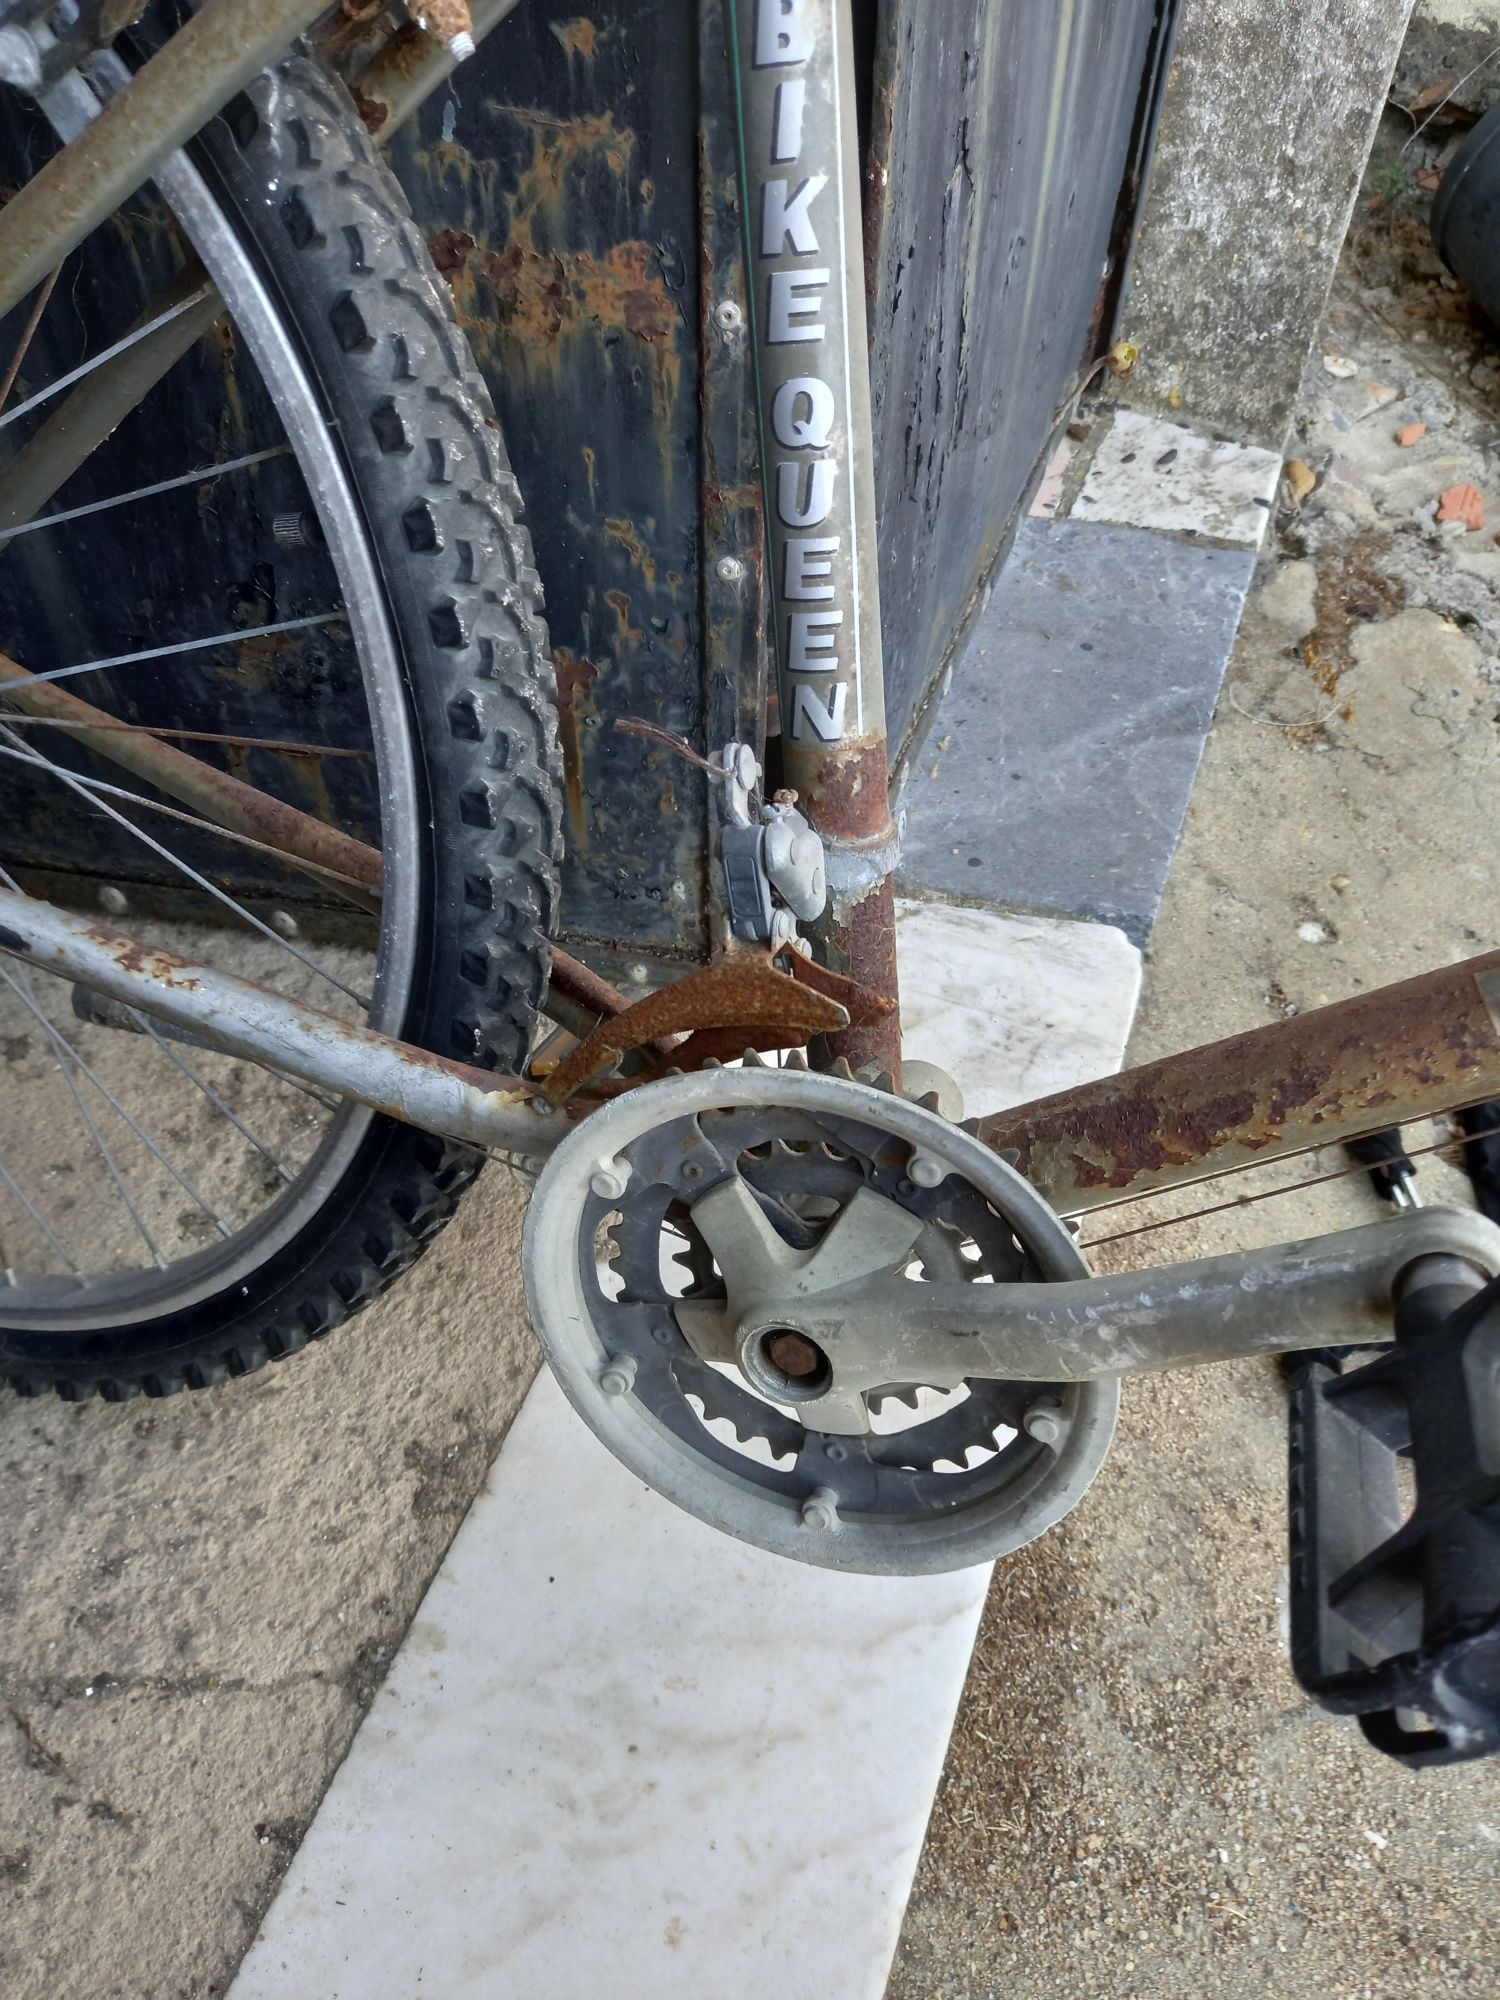 Bicicleta usada está parada a 2 anos